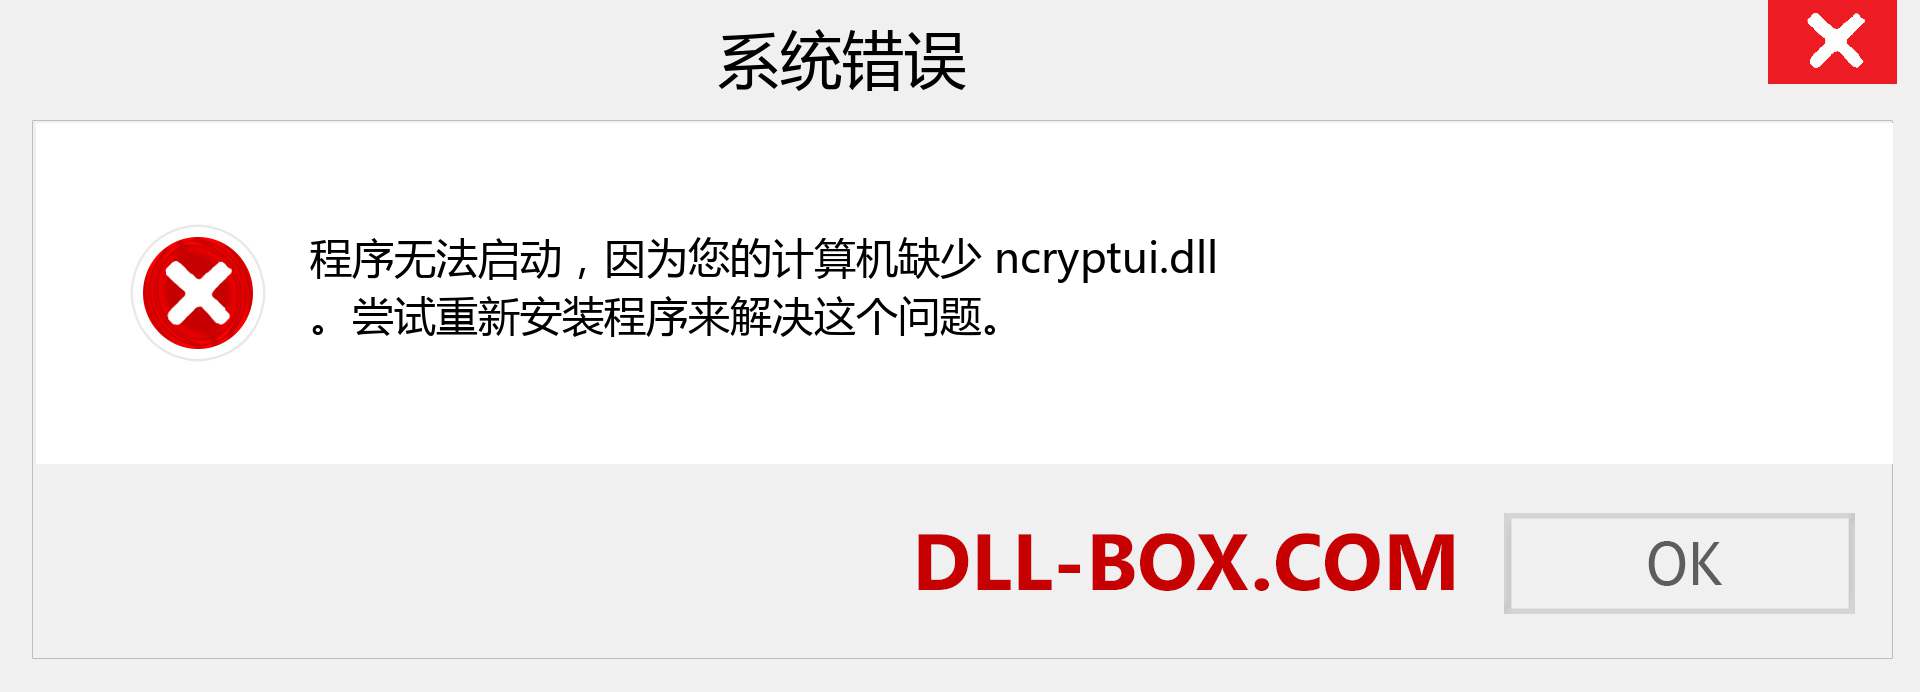 ncryptui.dll 文件丢失？。 适用于 Windows 7、8、10 的下载 - 修复 Windows、照片、图像上的 ncryptui dll 丢失错误